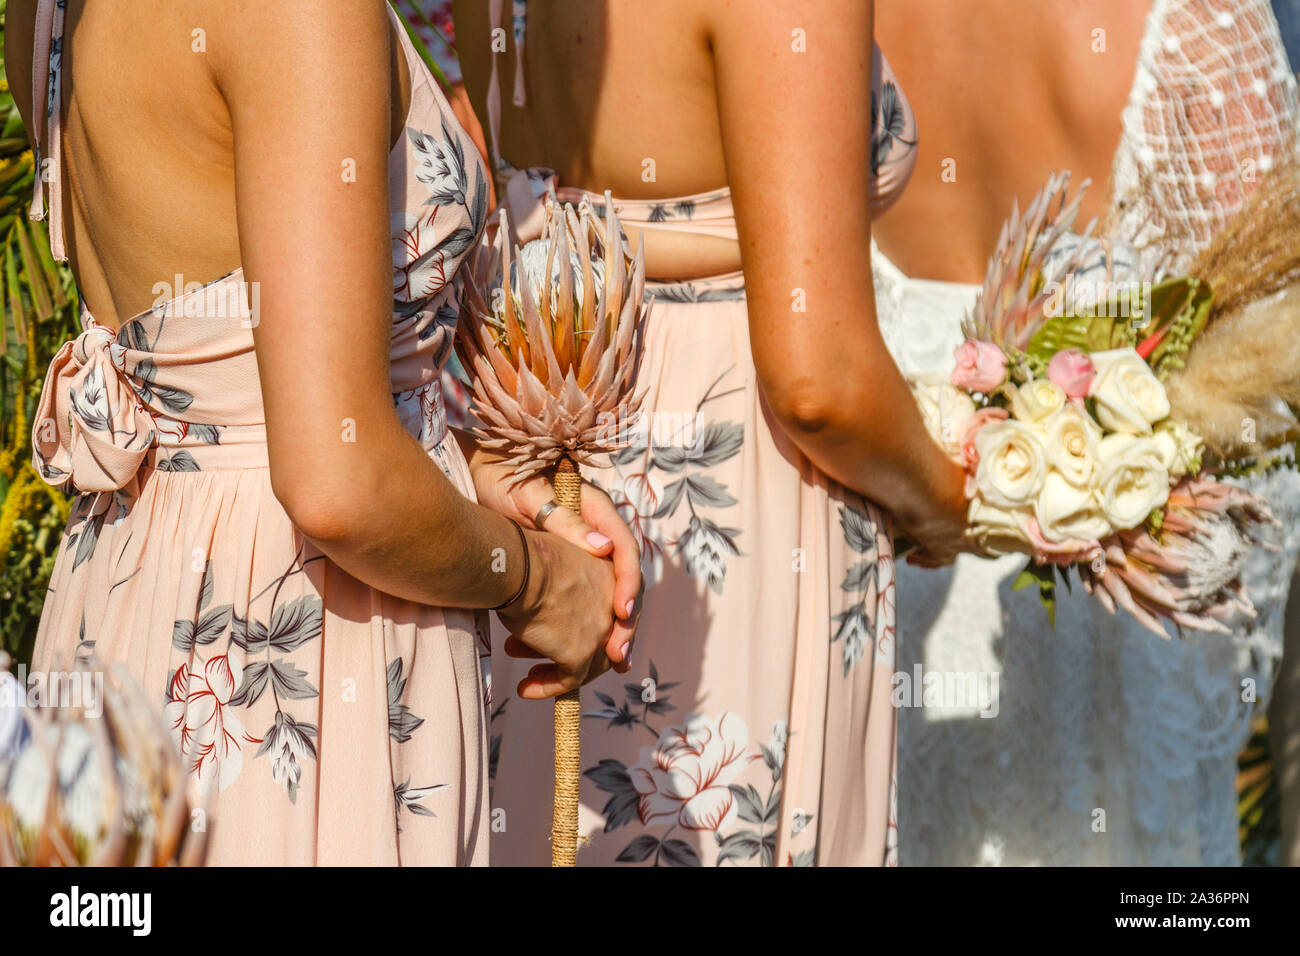 Demoiselles et une bride holding fleurs et bouquets, debout au cours d'une cérémonie de mariage. Pas de visage. Banque D'Images